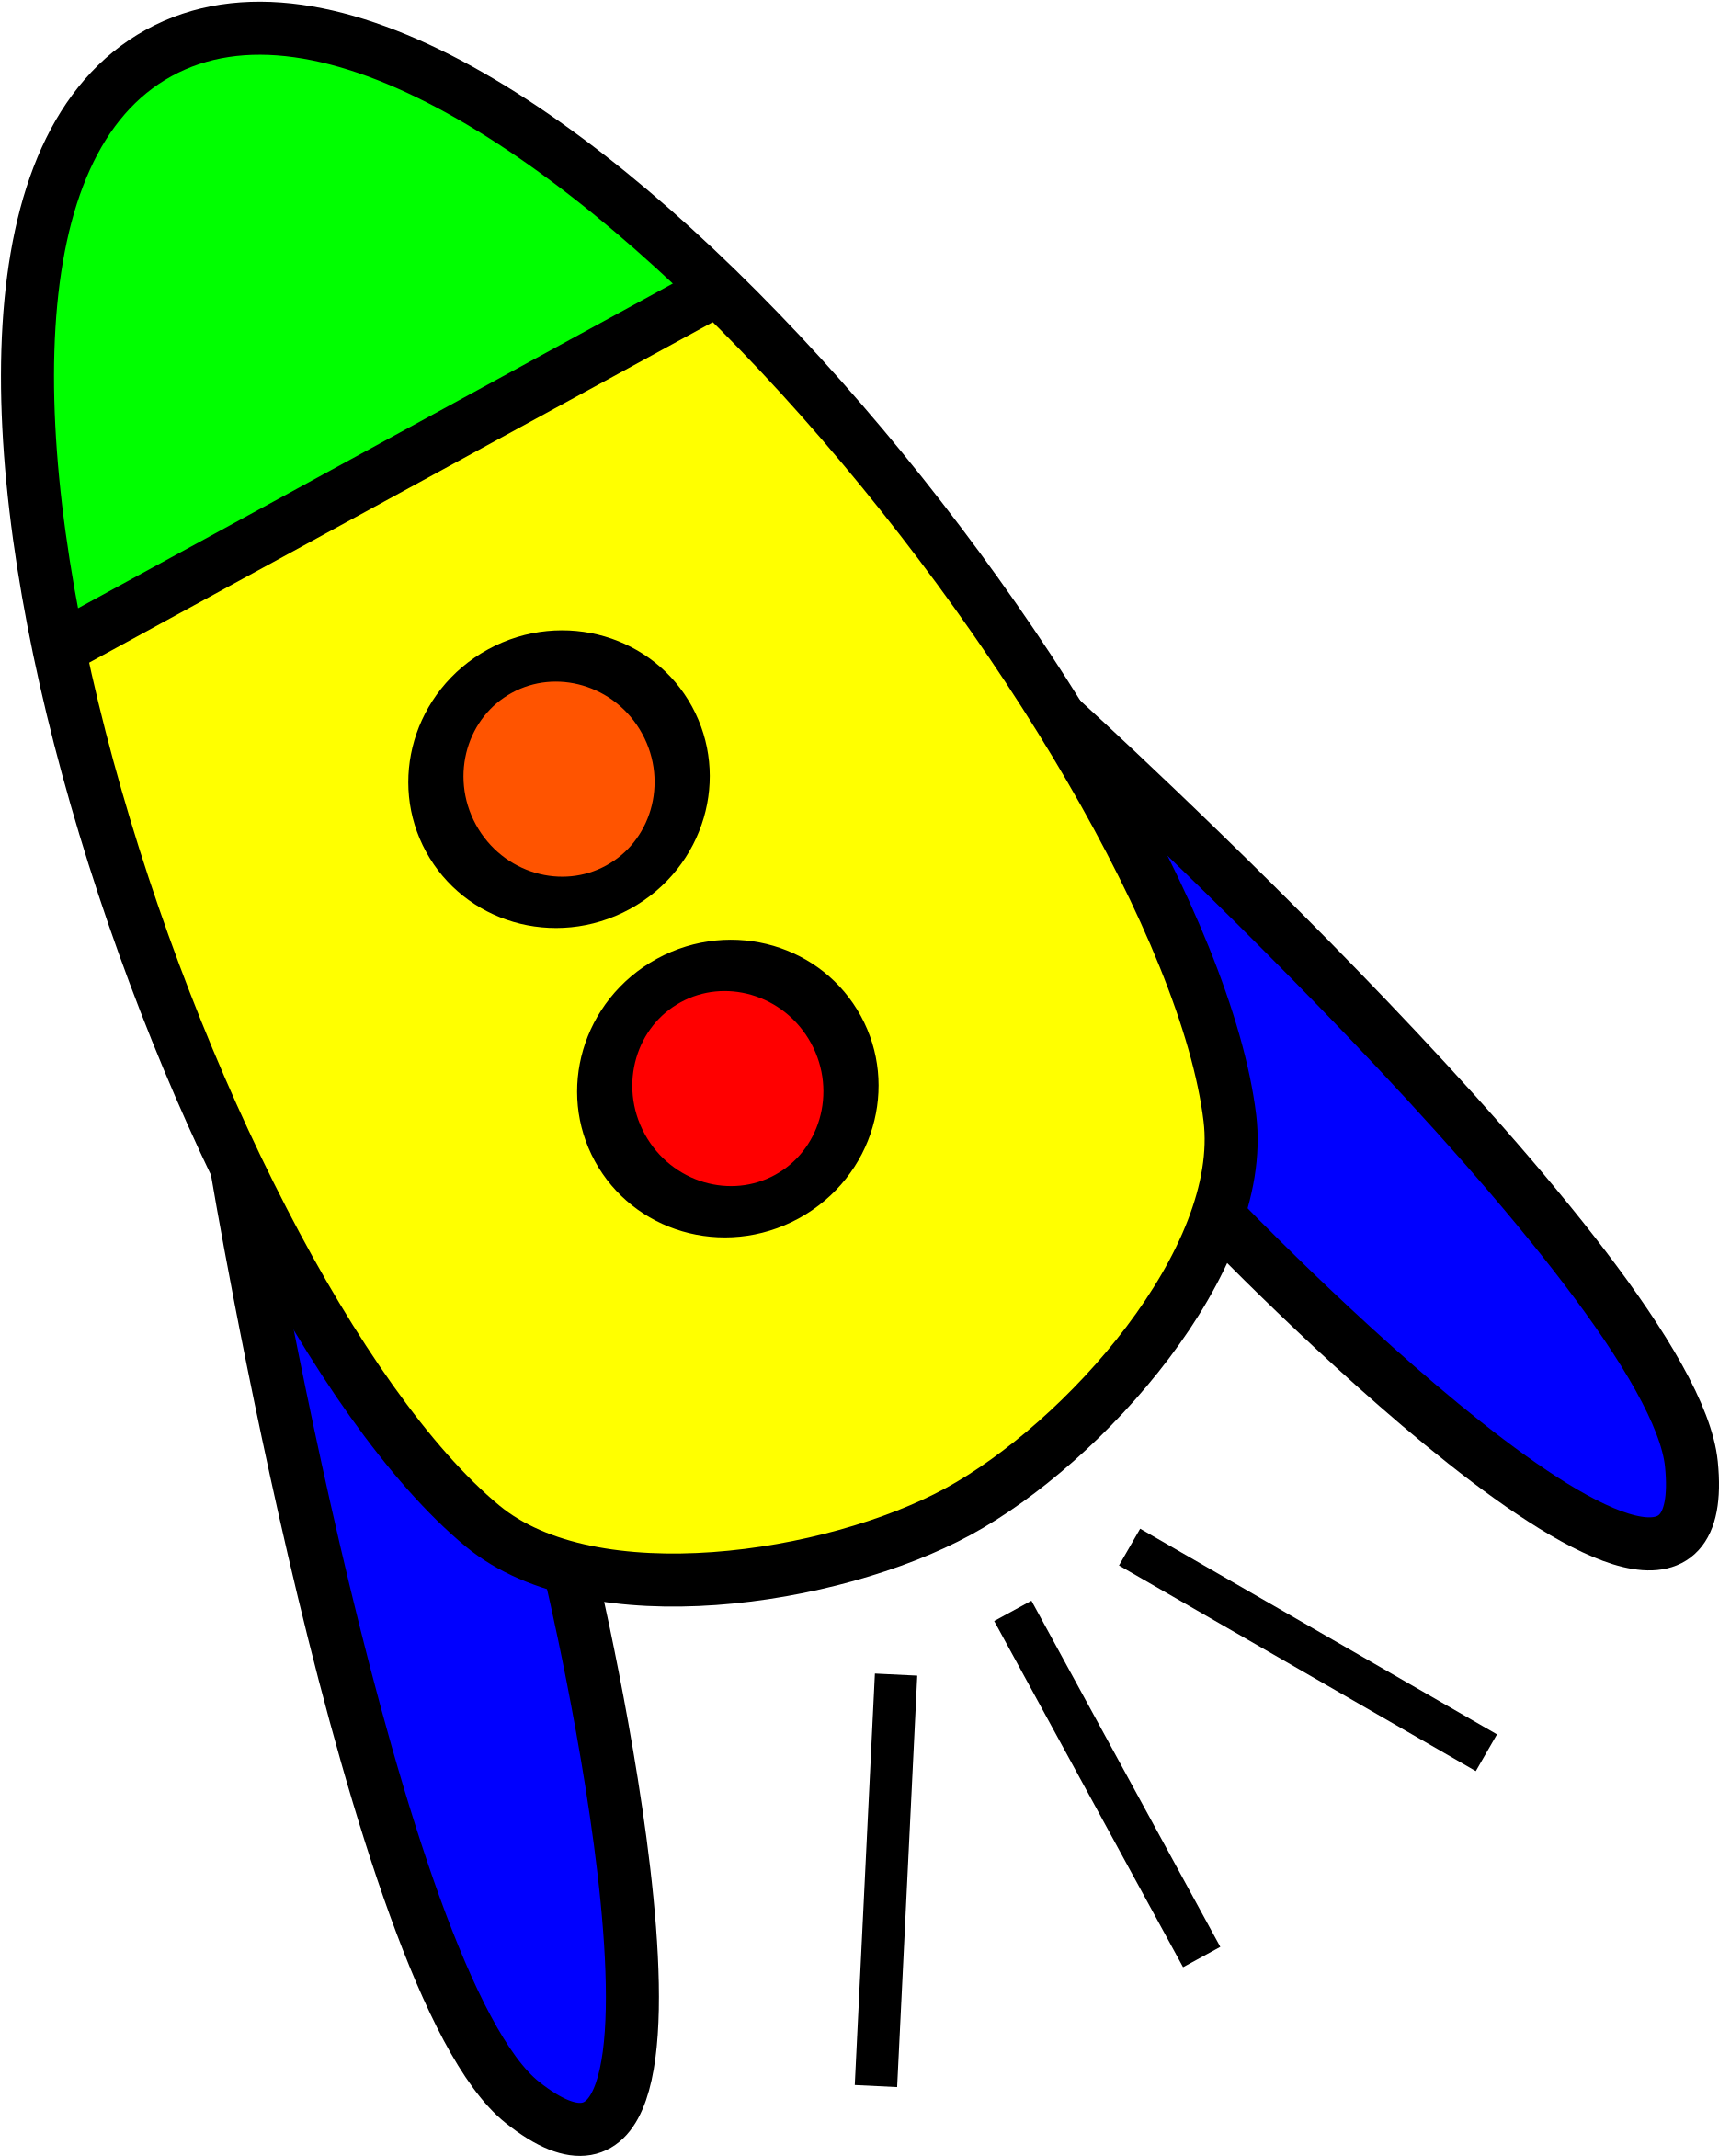 Ракета для детей. Ракета рисунок. Изображение ракеты для детей. Космическая ракета картинки для детей. Картинка ракеты для детей цветная